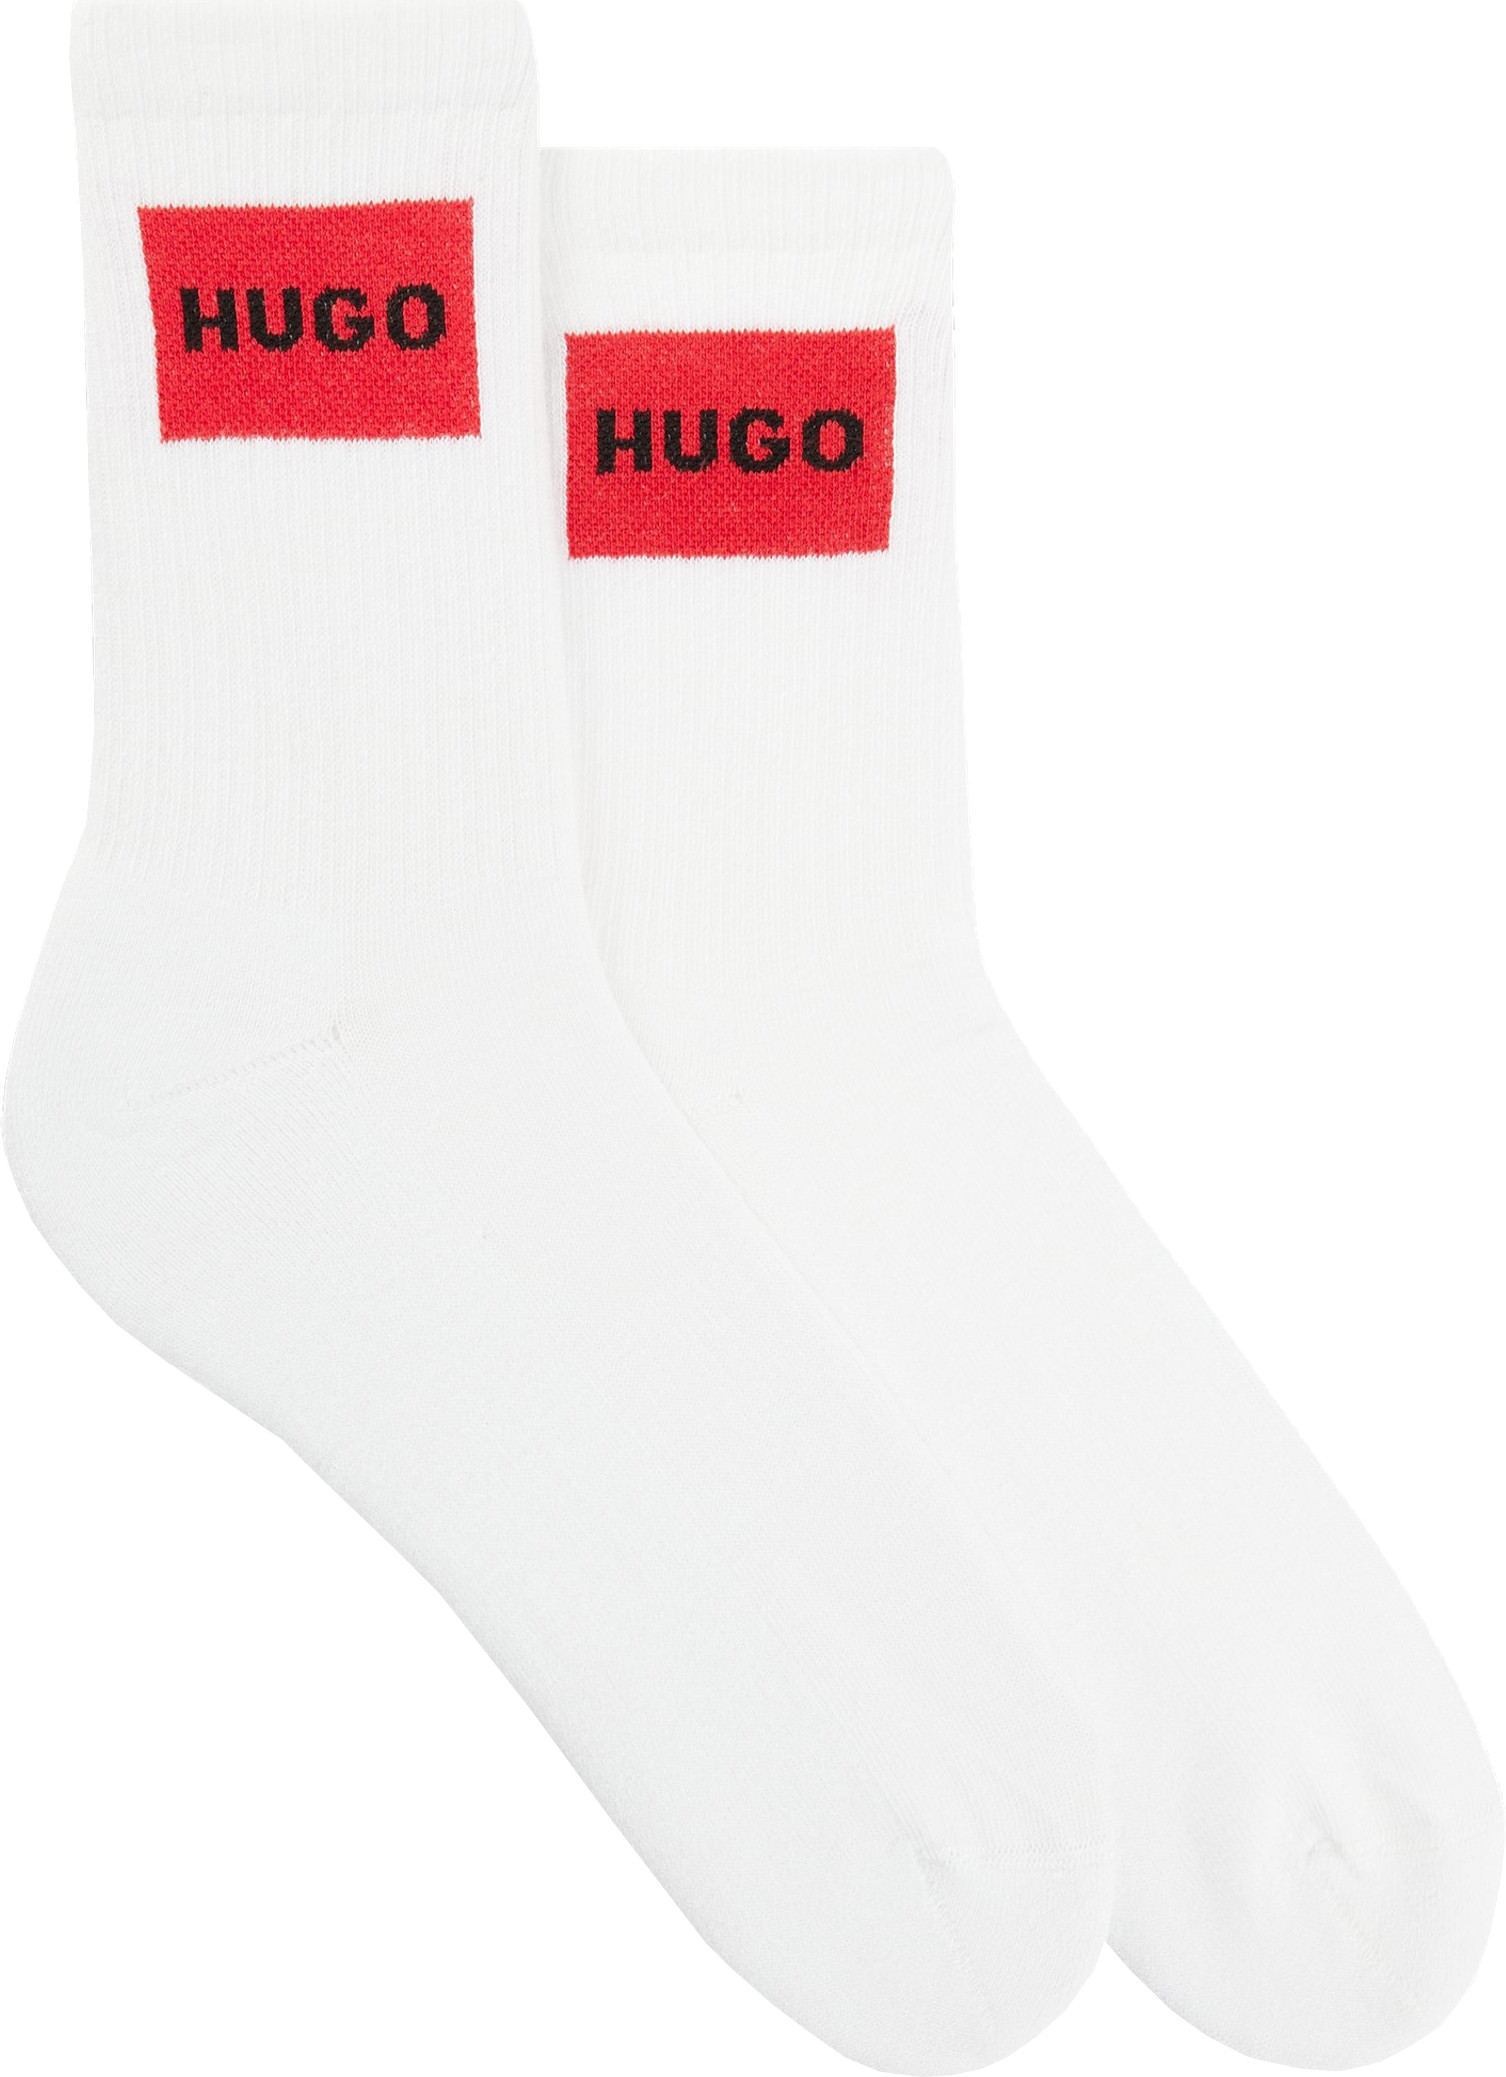 Hugo Boss 2 PACK - dámské ponožky HUGO 50510661-100 39-42